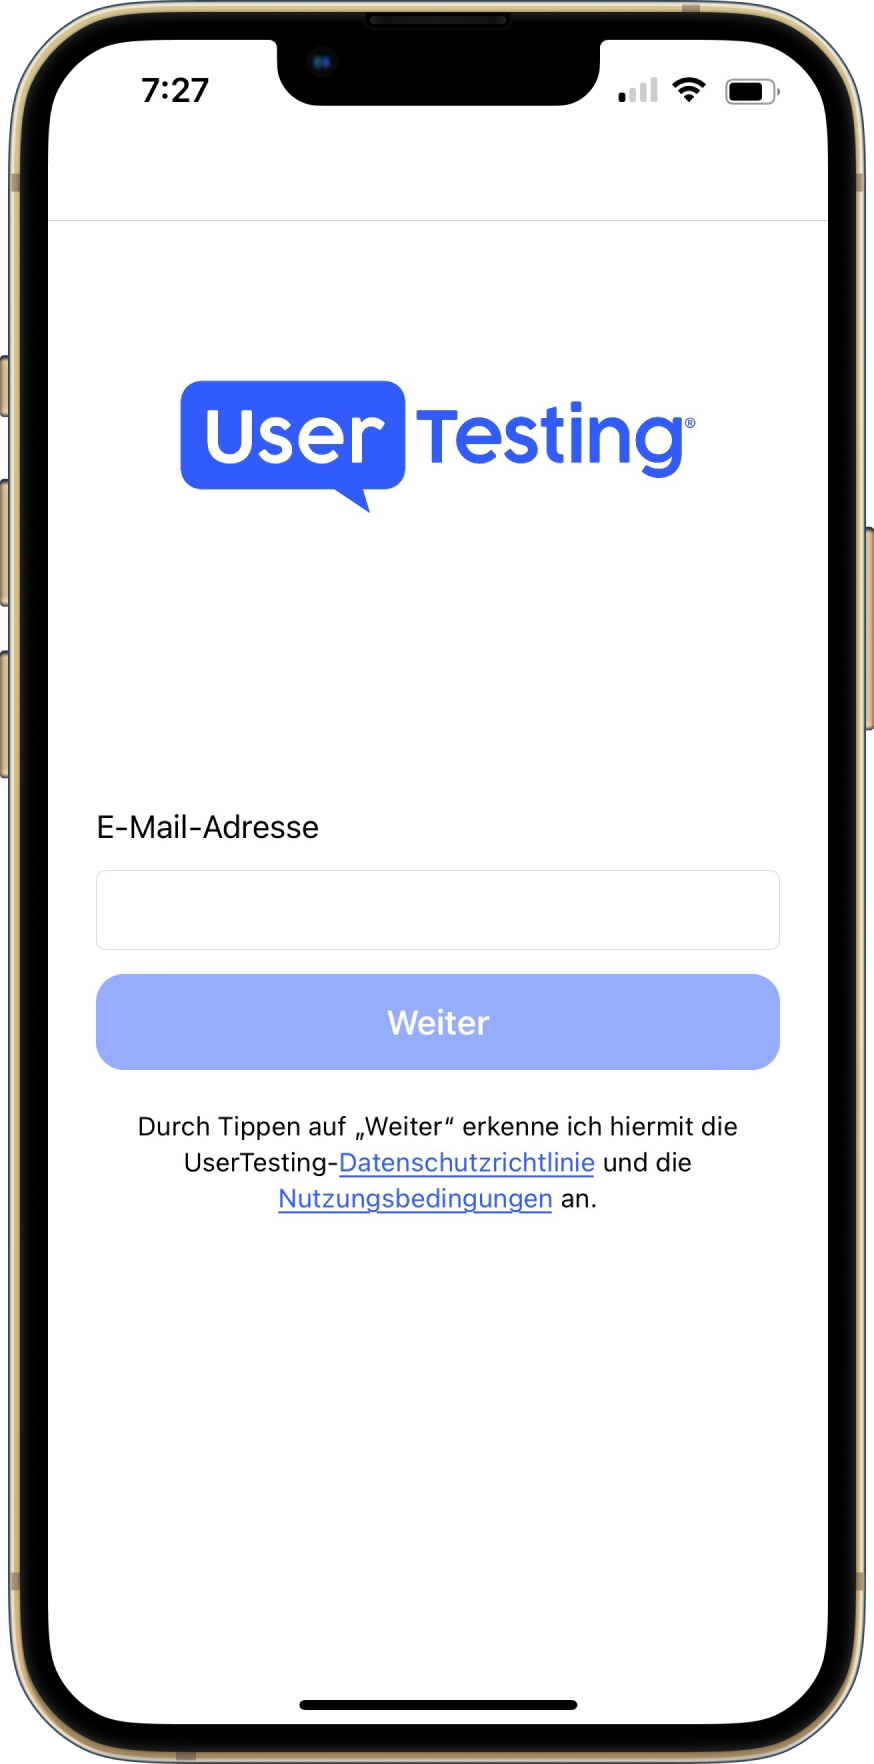 Der Anmeldebildschirm von UserTesting mobile. Es gibt ein Feld zur Eingabe Ihrer E-Mail-Adresse und eine Schaltfläche Weiter, um zum nächsten Bildschirm zu gelangen. Die Schaltfläche Weiter ist deaktiviert, um anzuzeigen, dass die E-Mail-Adresse erforderlich ist.